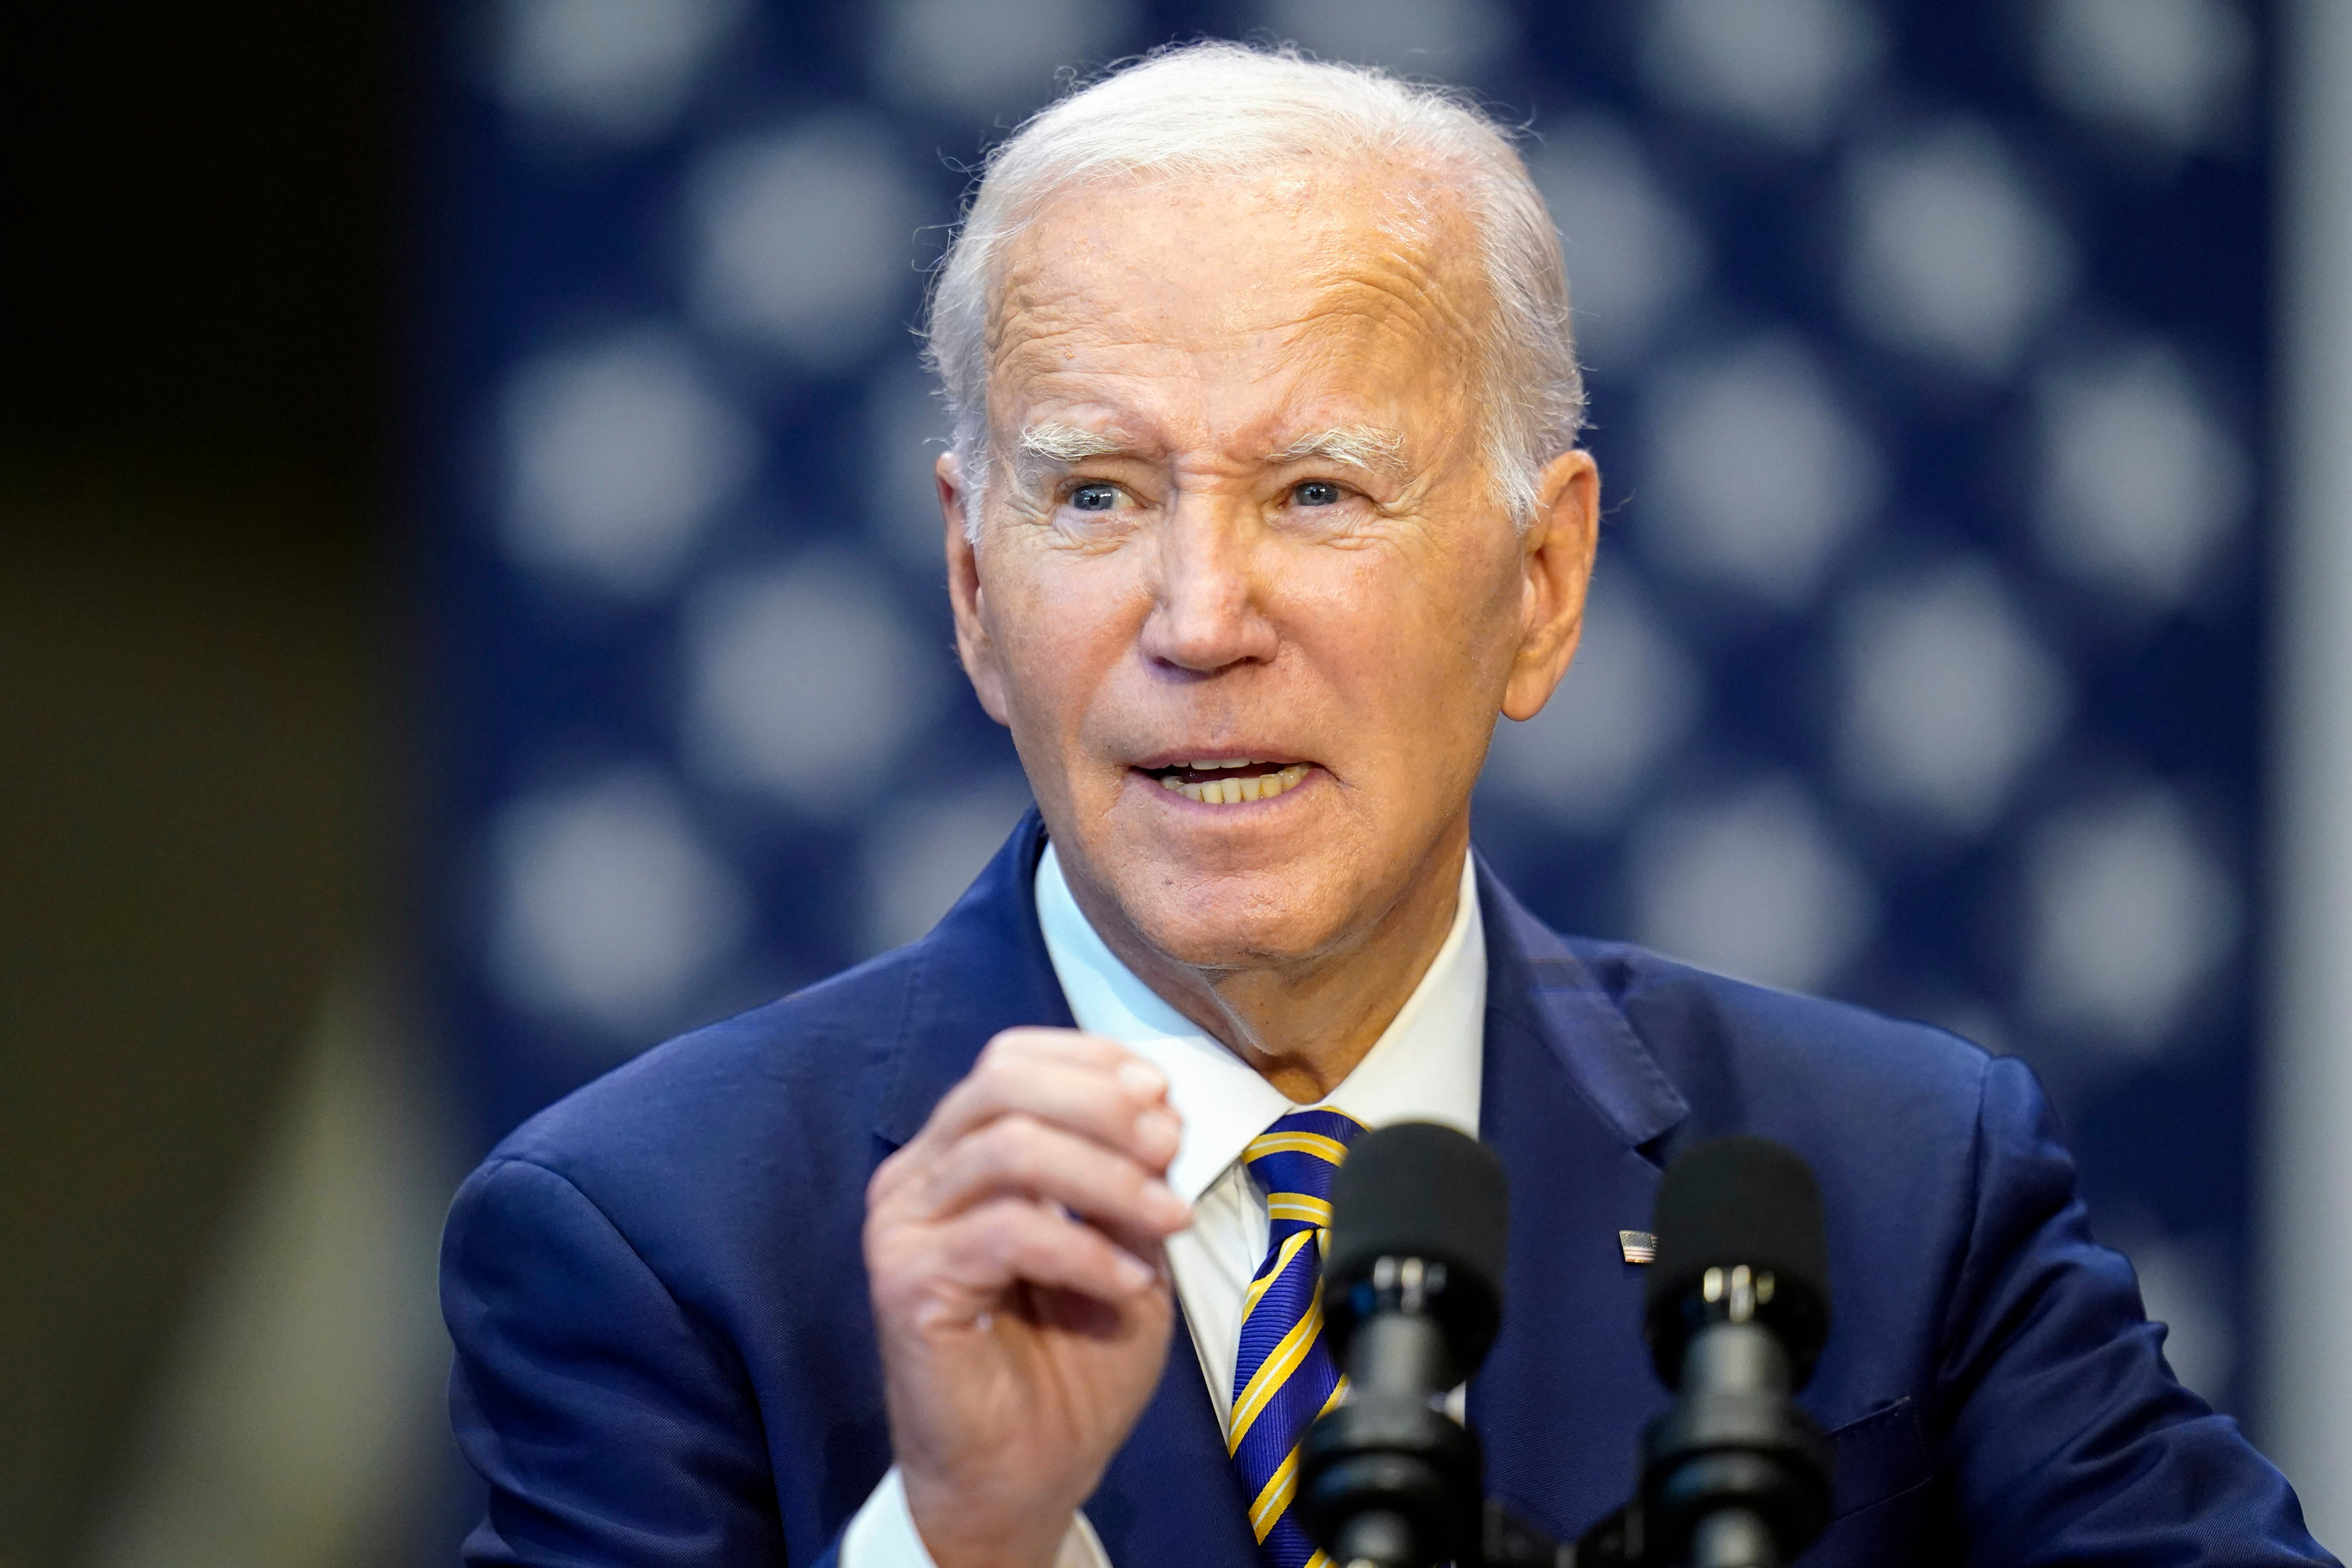 Joe Biden’s recent speech in Vietnam was slow, a tiny bit slurred and barely audible